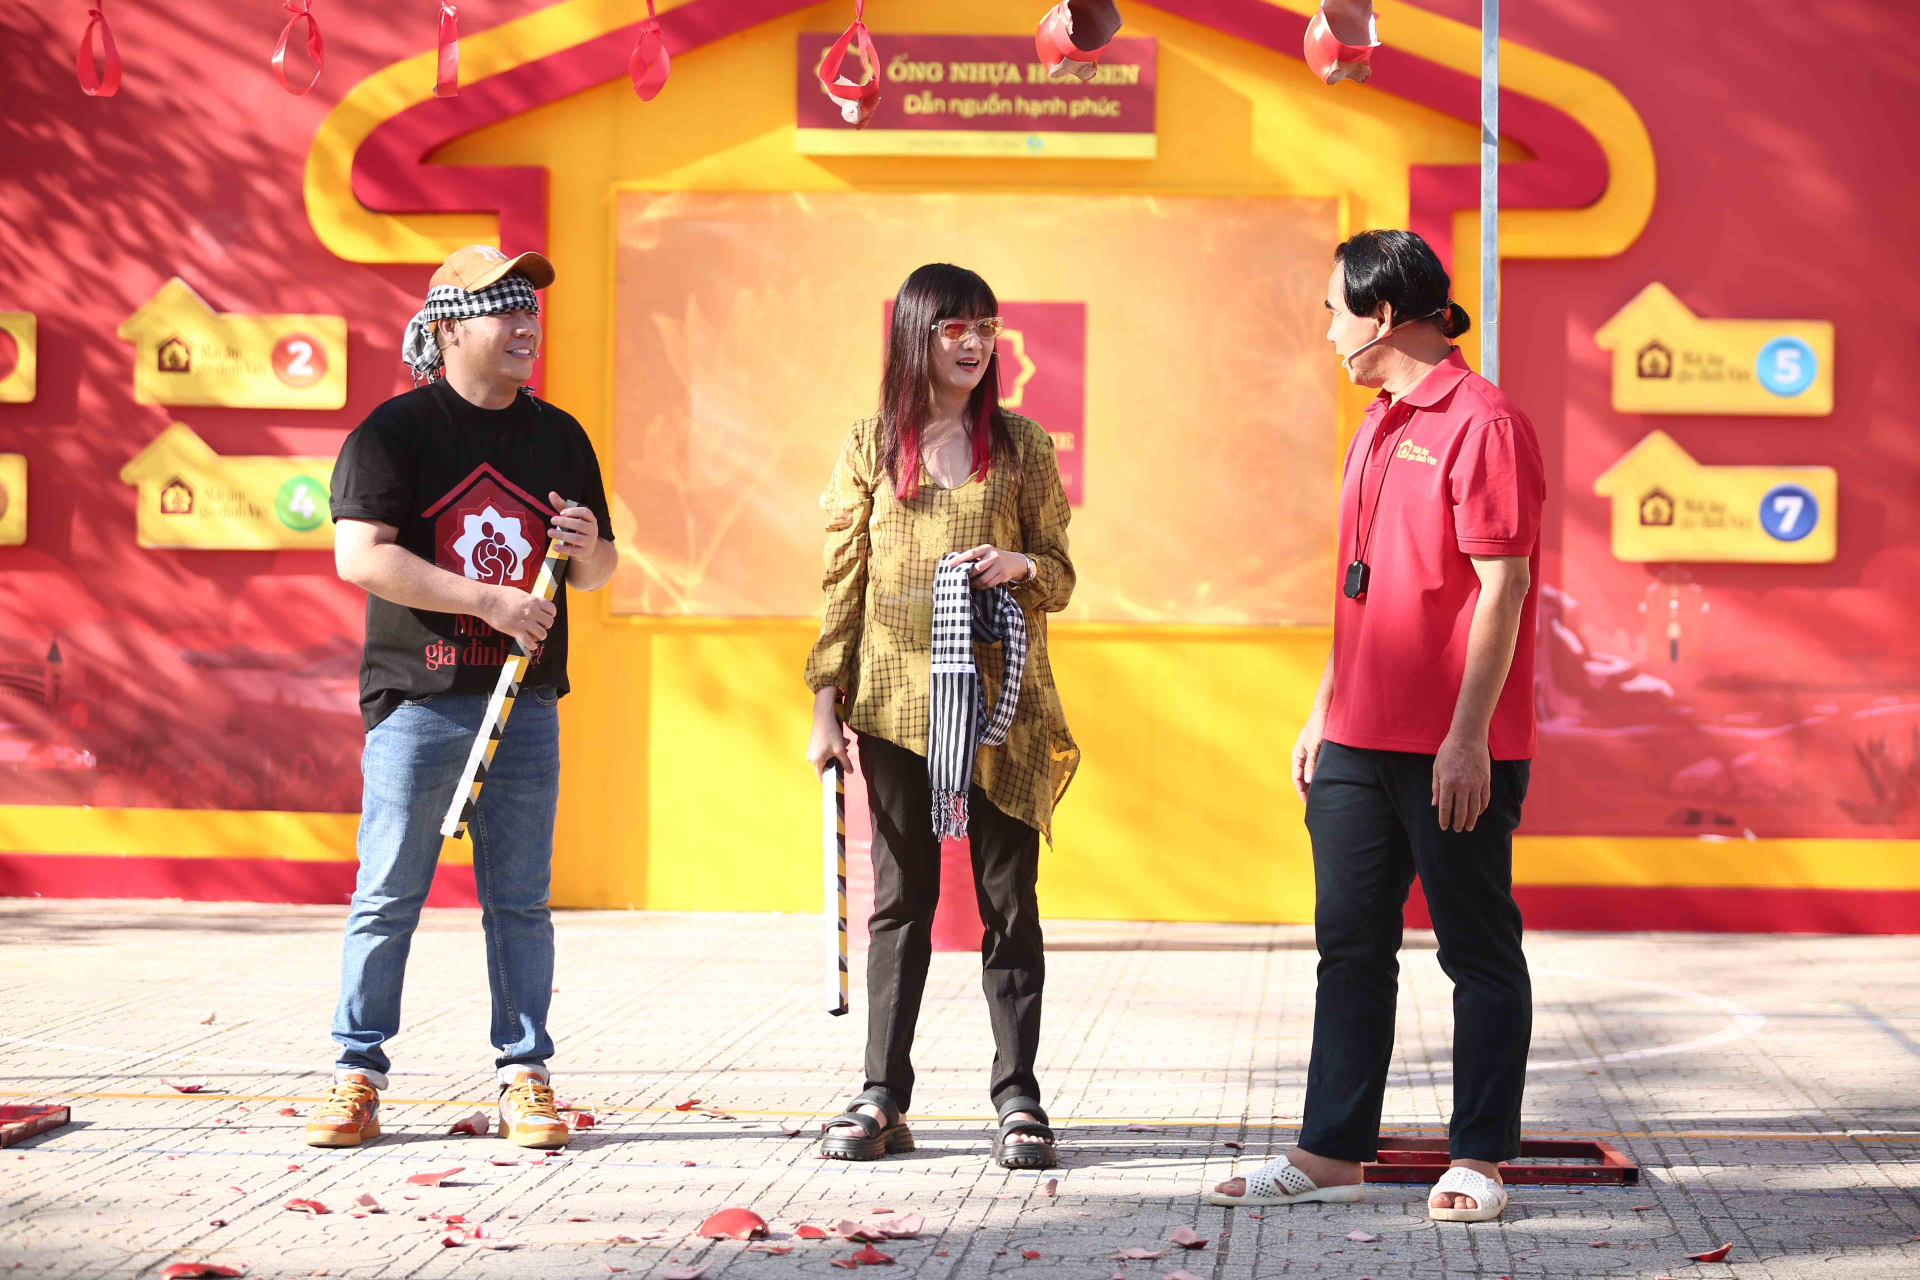 Diễn viên Hiền Mai và ca sĩ, nhạc sĩ Hamlet Trương góp sức mang về giải thưởng 105 triệu cho trẻ em mồ côi - ảnh 4